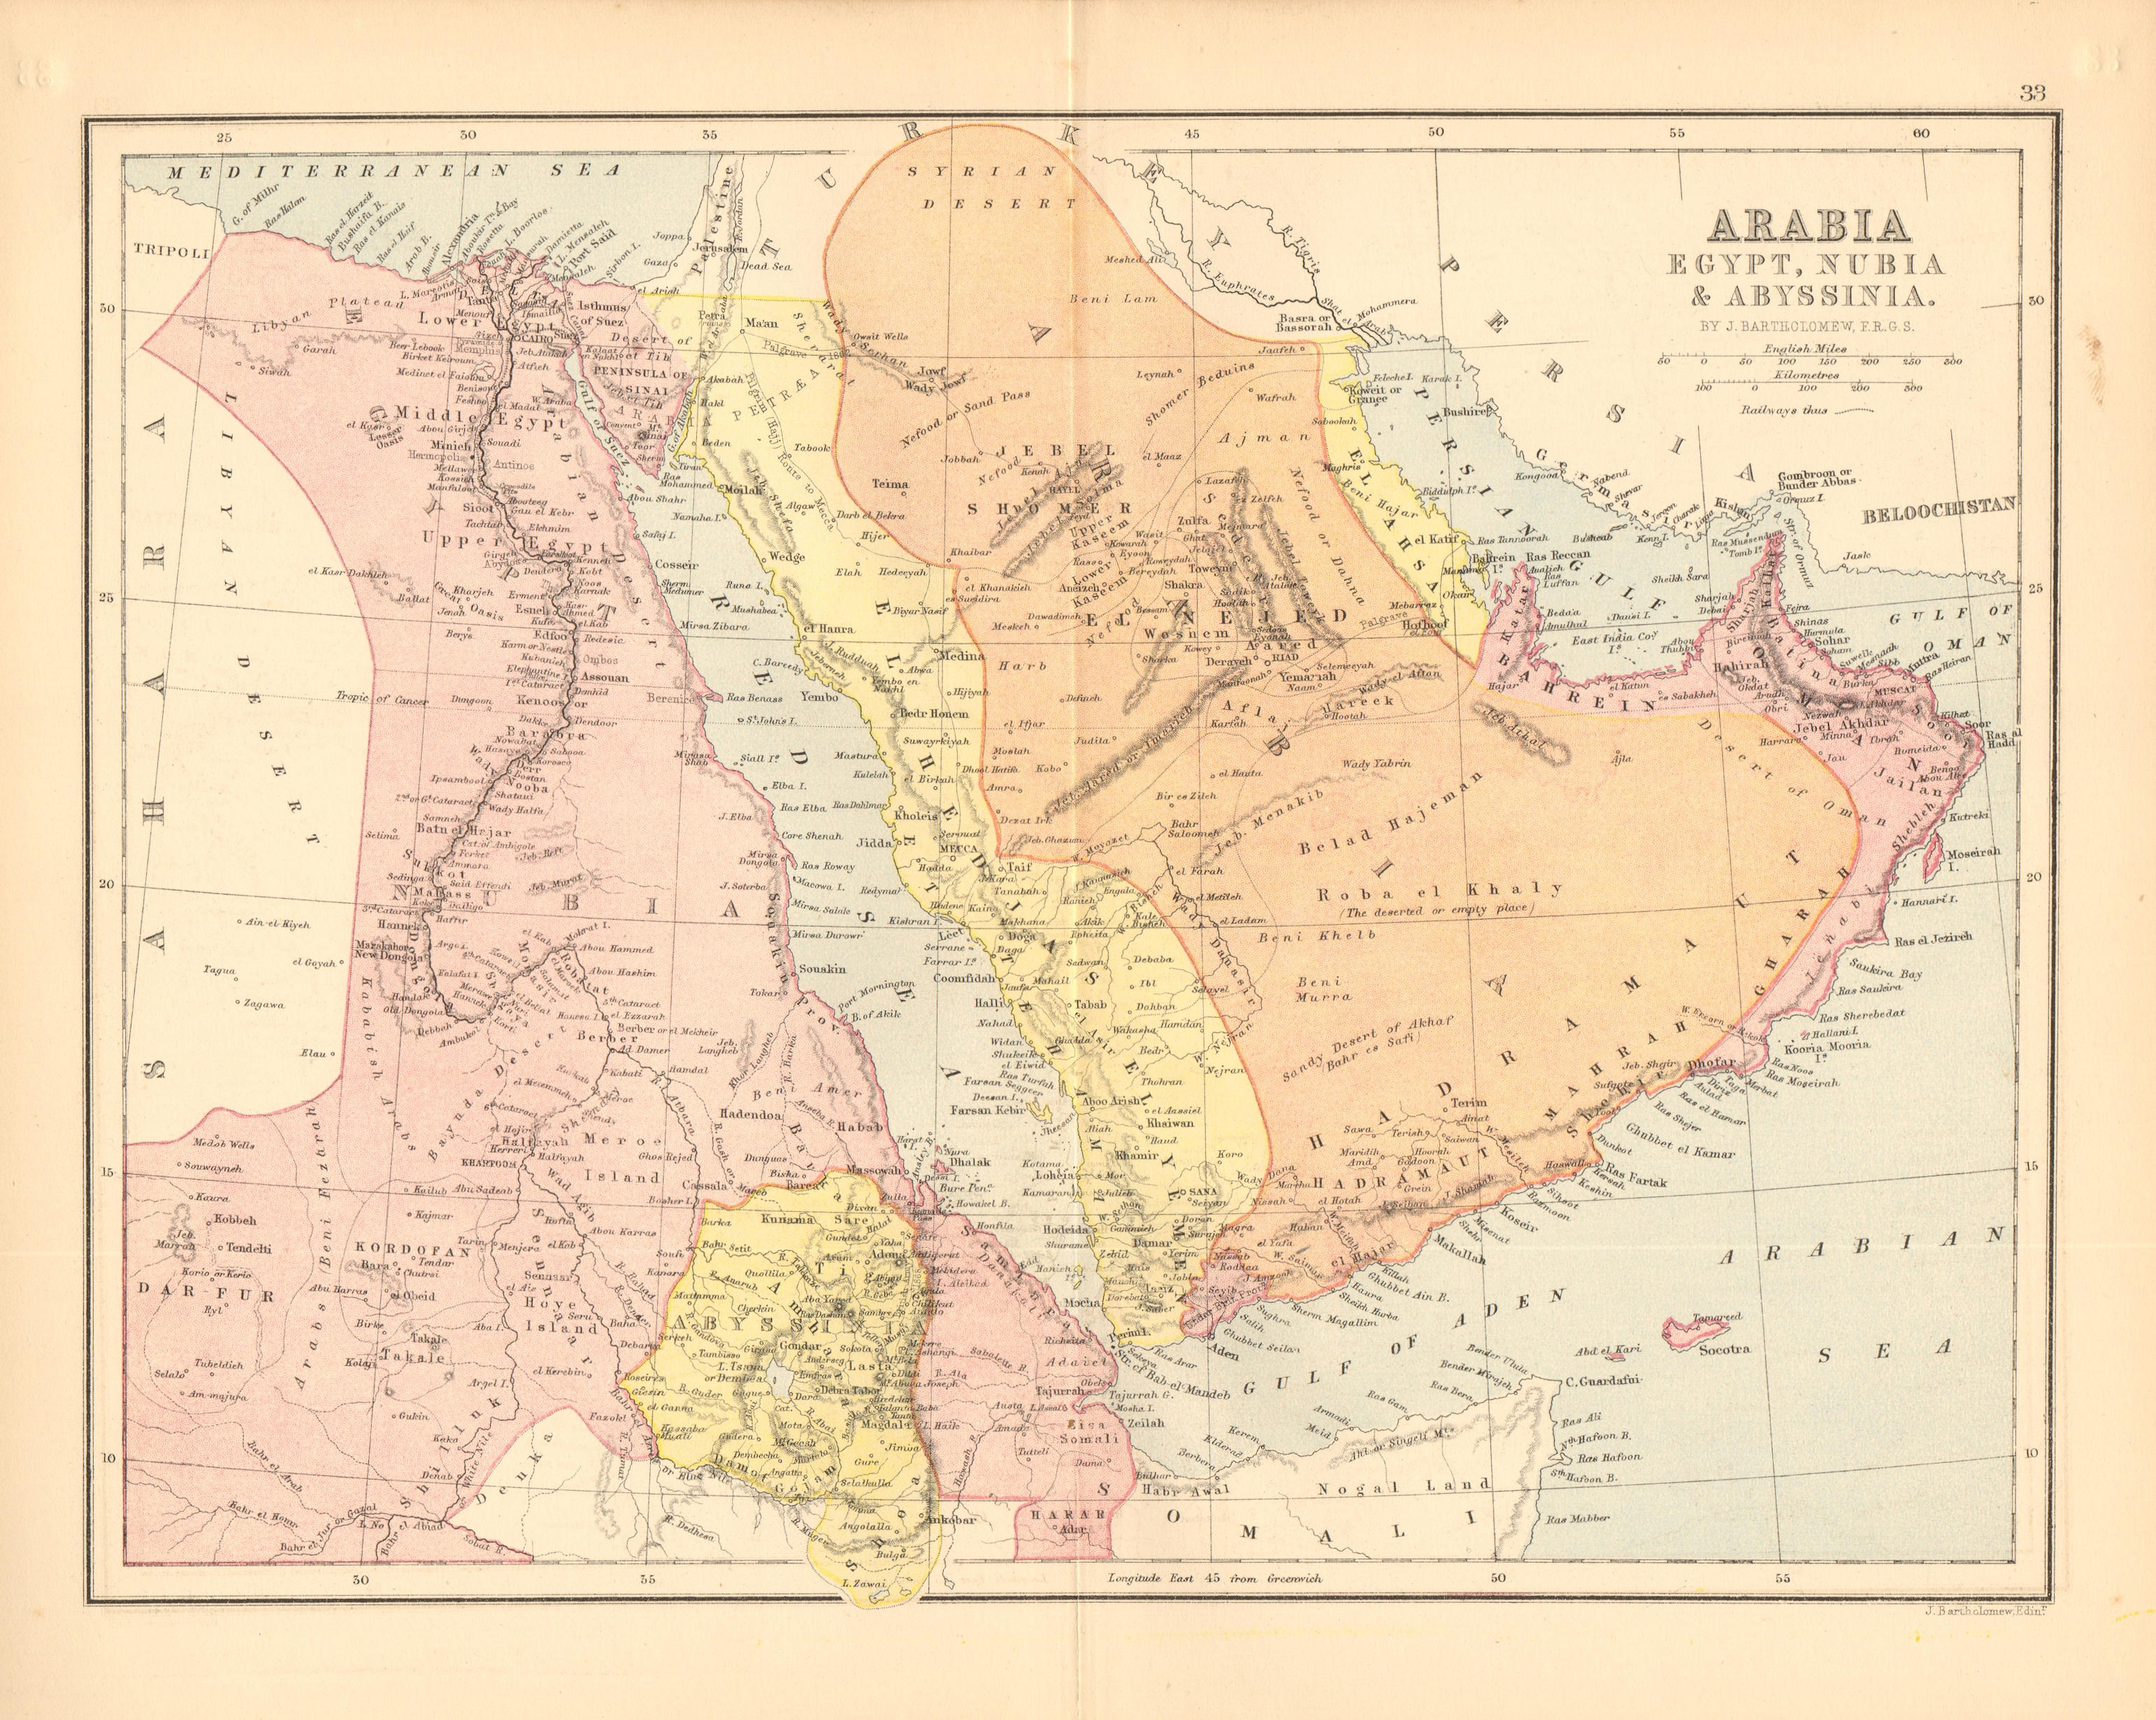 ARABIA EGYPT NUBIA ABYSSINIA. Abou Thubbi (Abu Dhabi) Debai (Dubai) 1876 map